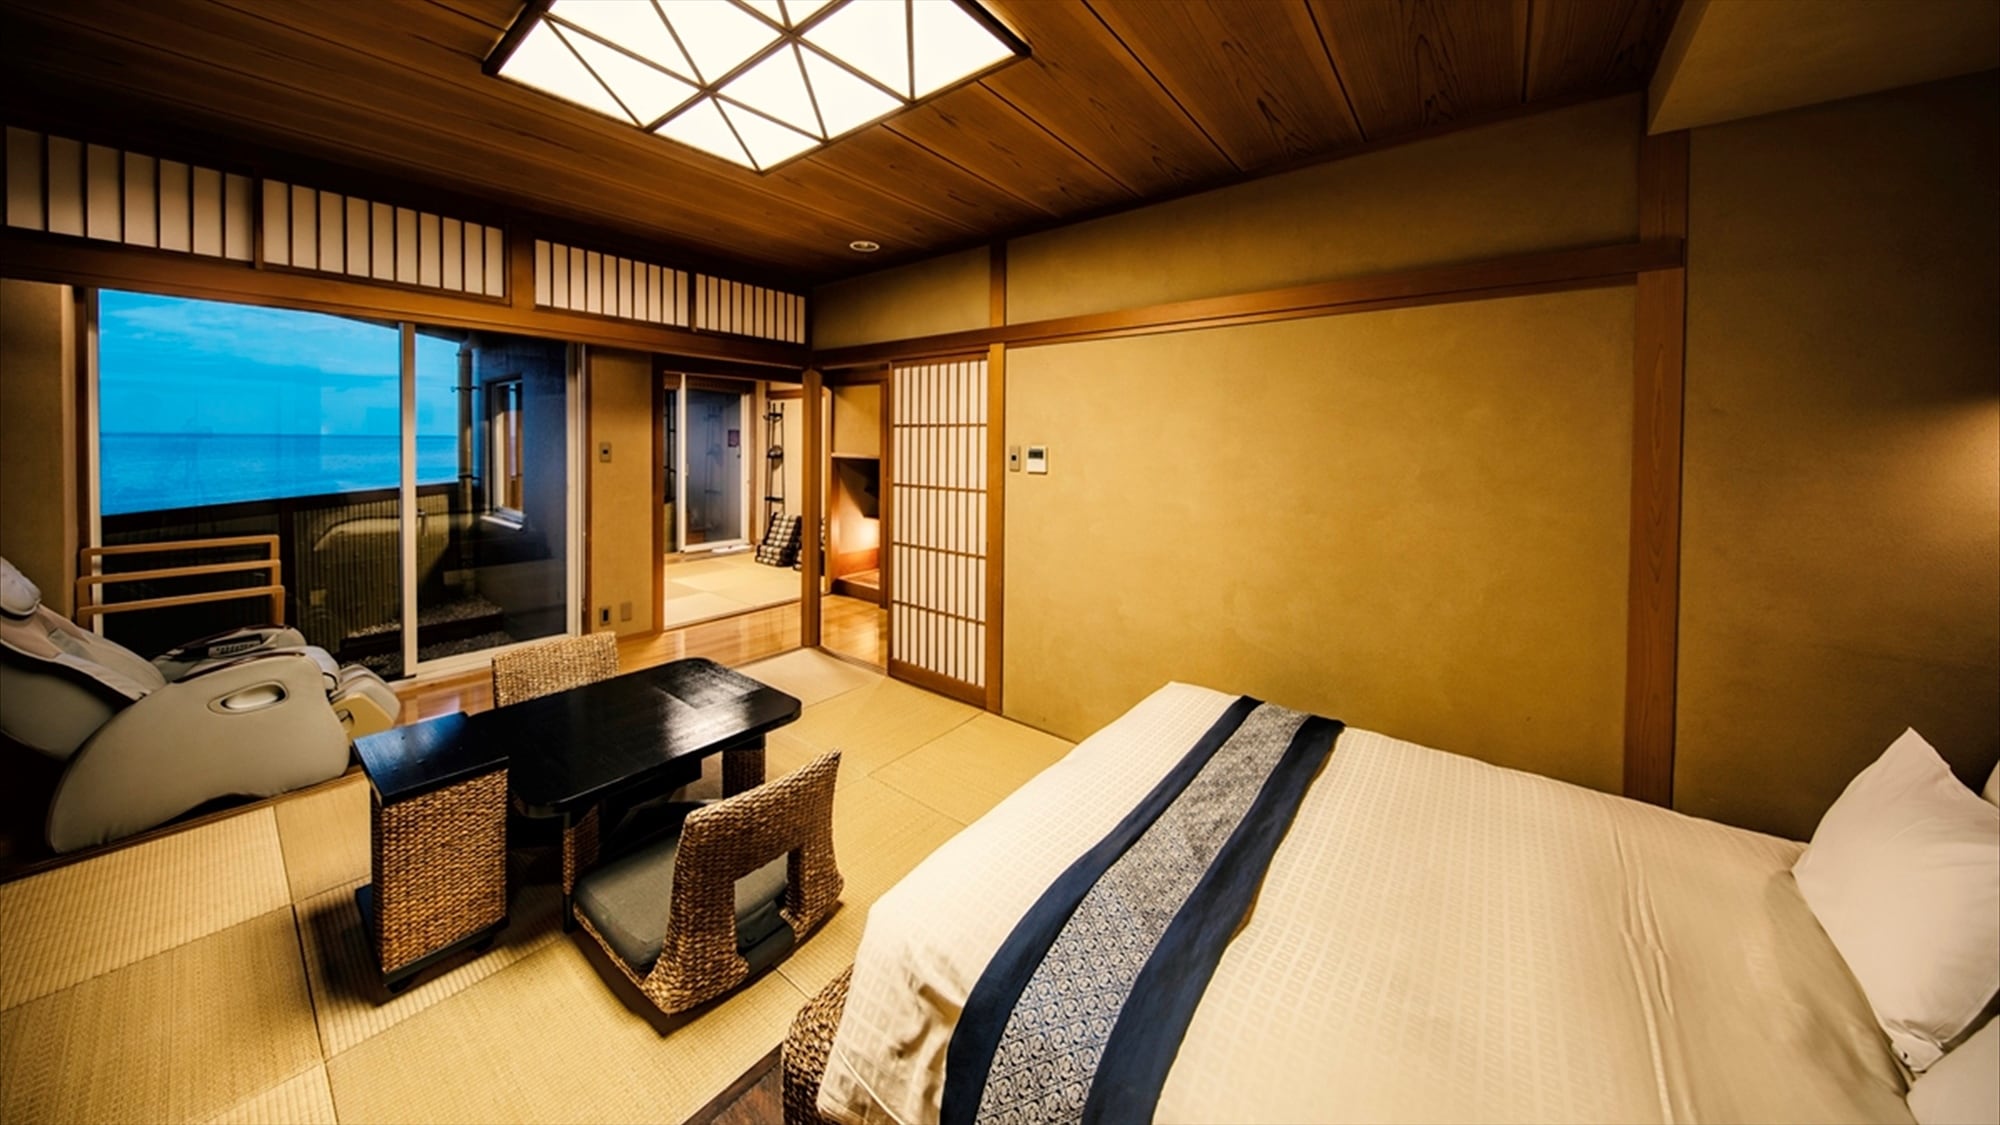 [Double bed Jepang dan Barat kamar 2 kamar] Tempat tidur ganda yang luas tipe kamar Jepang dan Barat 2 kamar.